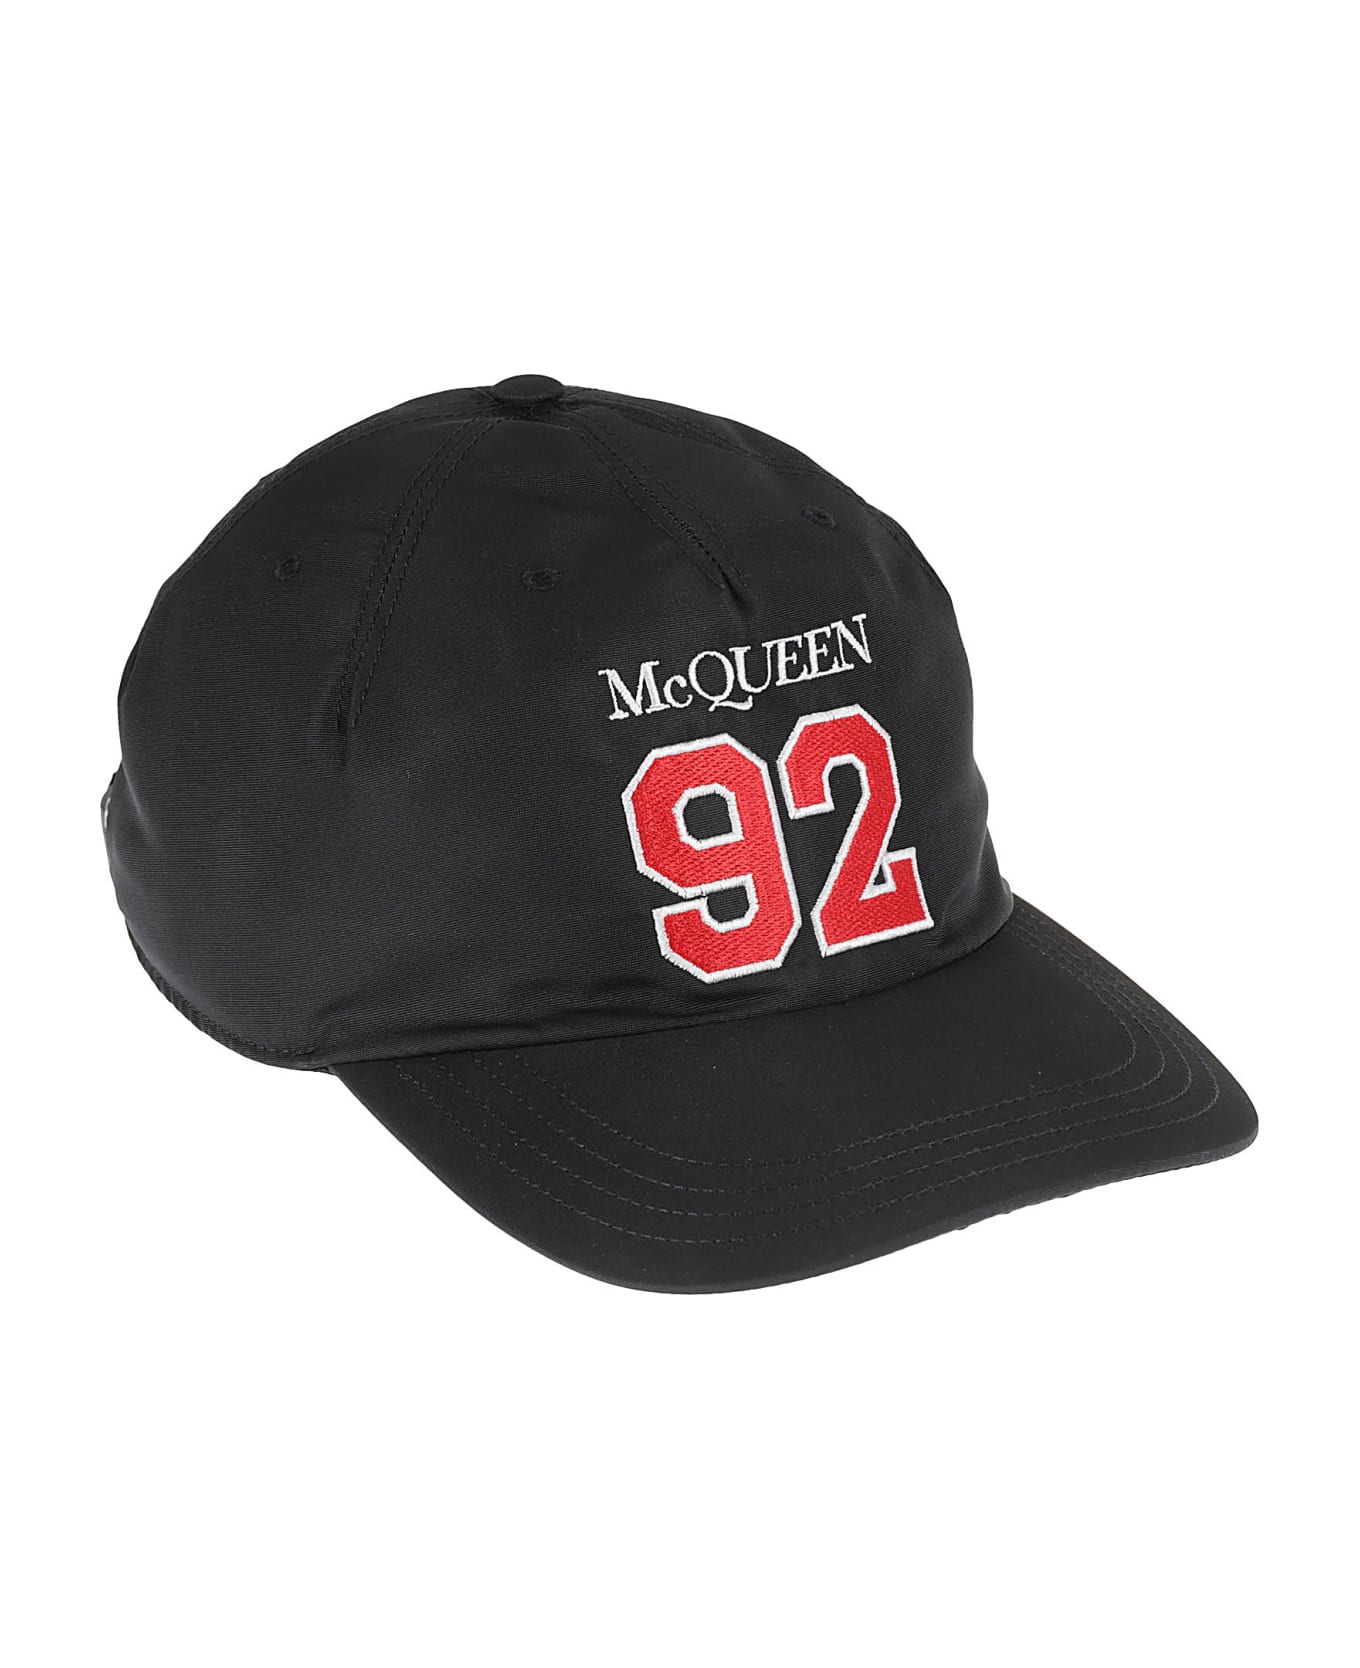 Alexander McQueen Mcqueen Sport Hat - Black/red 帽子